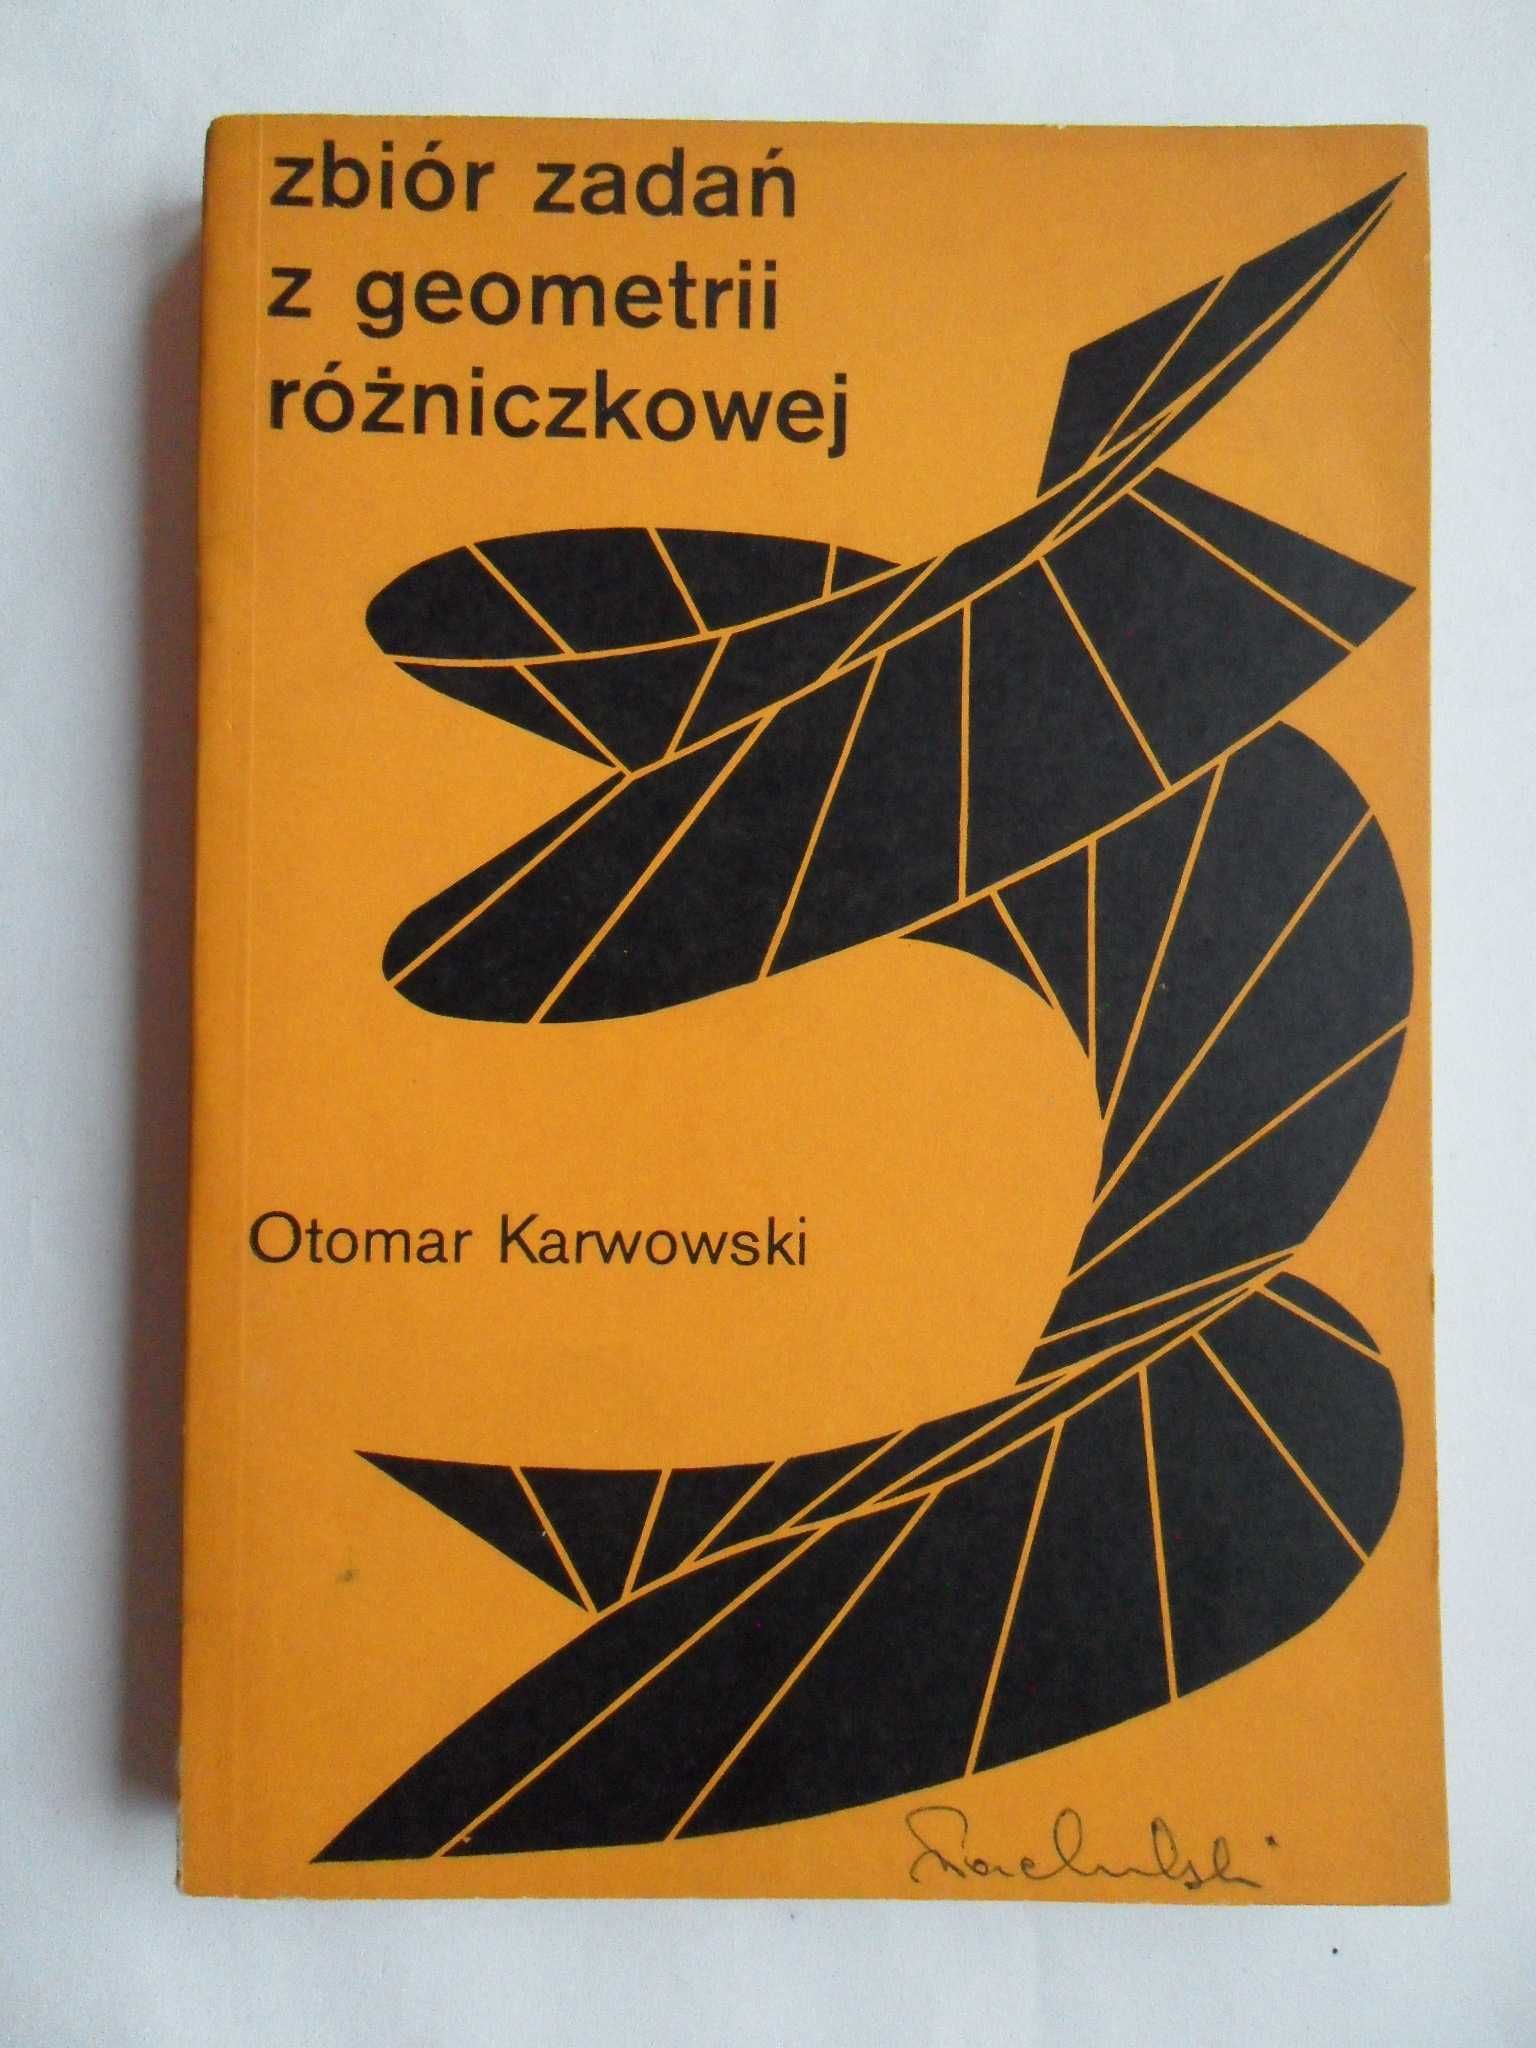 Zbiór zadań z geometrii różniczkowej, Otomar Karwowski